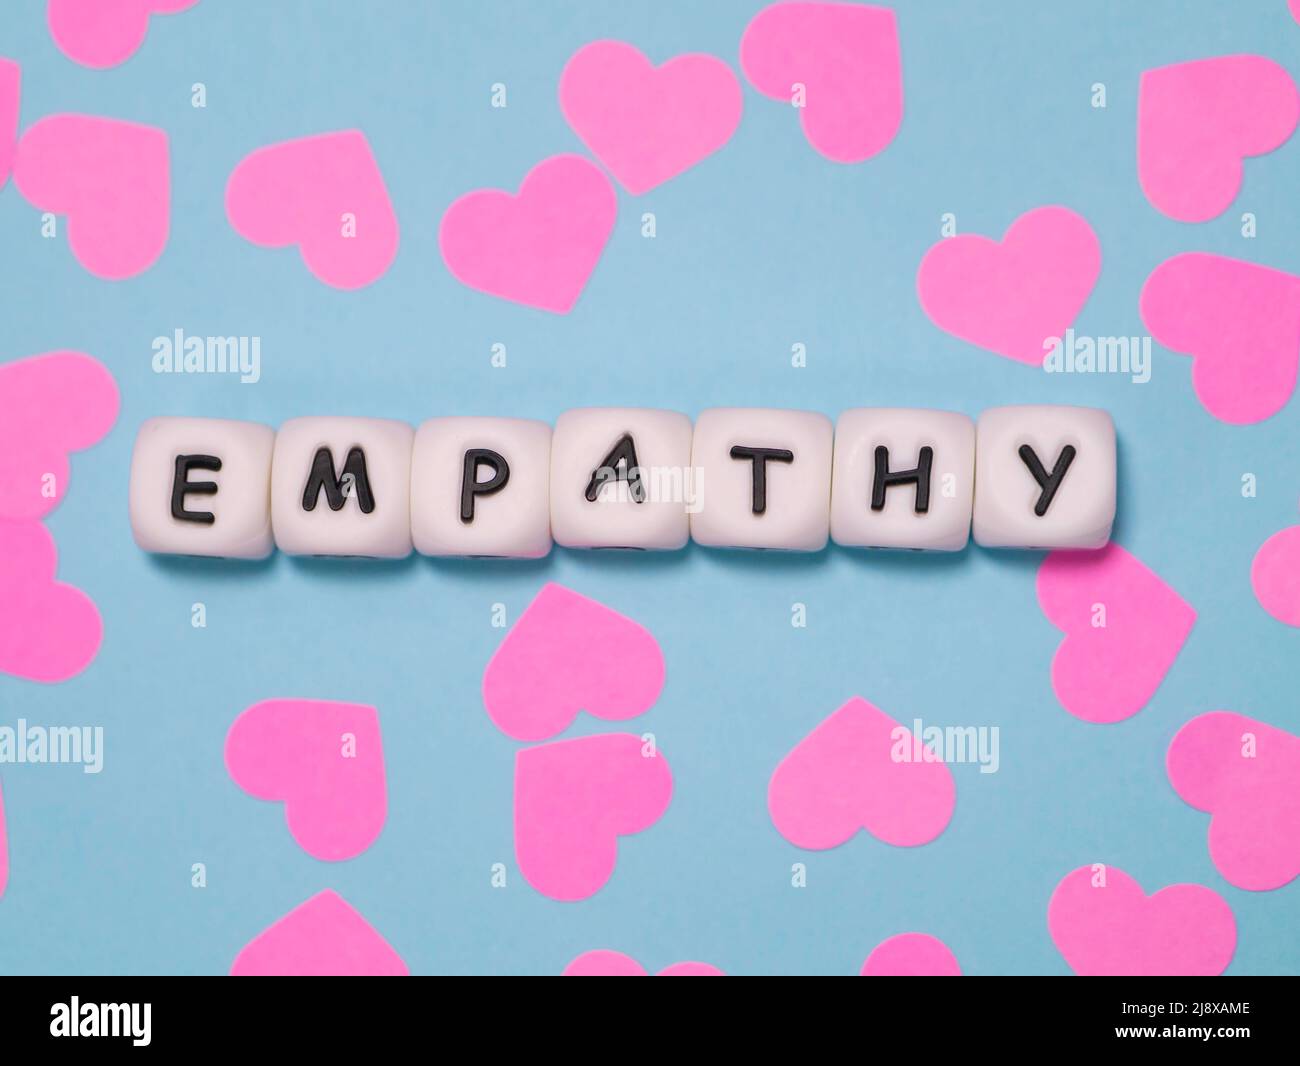 La palabra 'Empathy' se presentó con cuentas blancas sobre un fondo azul con corazones rosados. Foto de stock